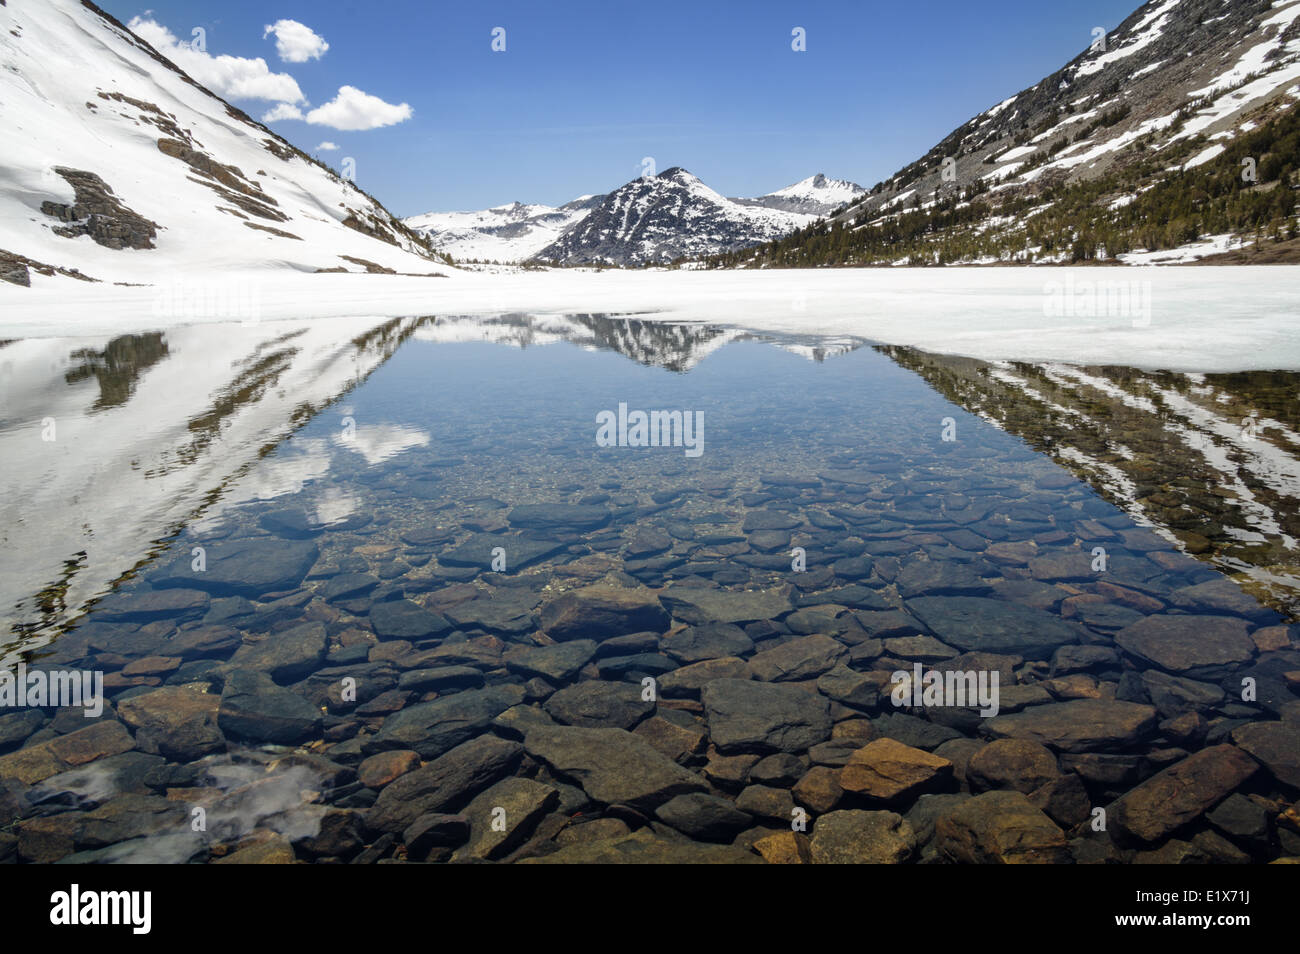 Reflet de Gray Butte dans le lac Summit dans les montagnes de la Sierra Nevada comme la glace et la fonte des neiges au printemps Banque D'Images